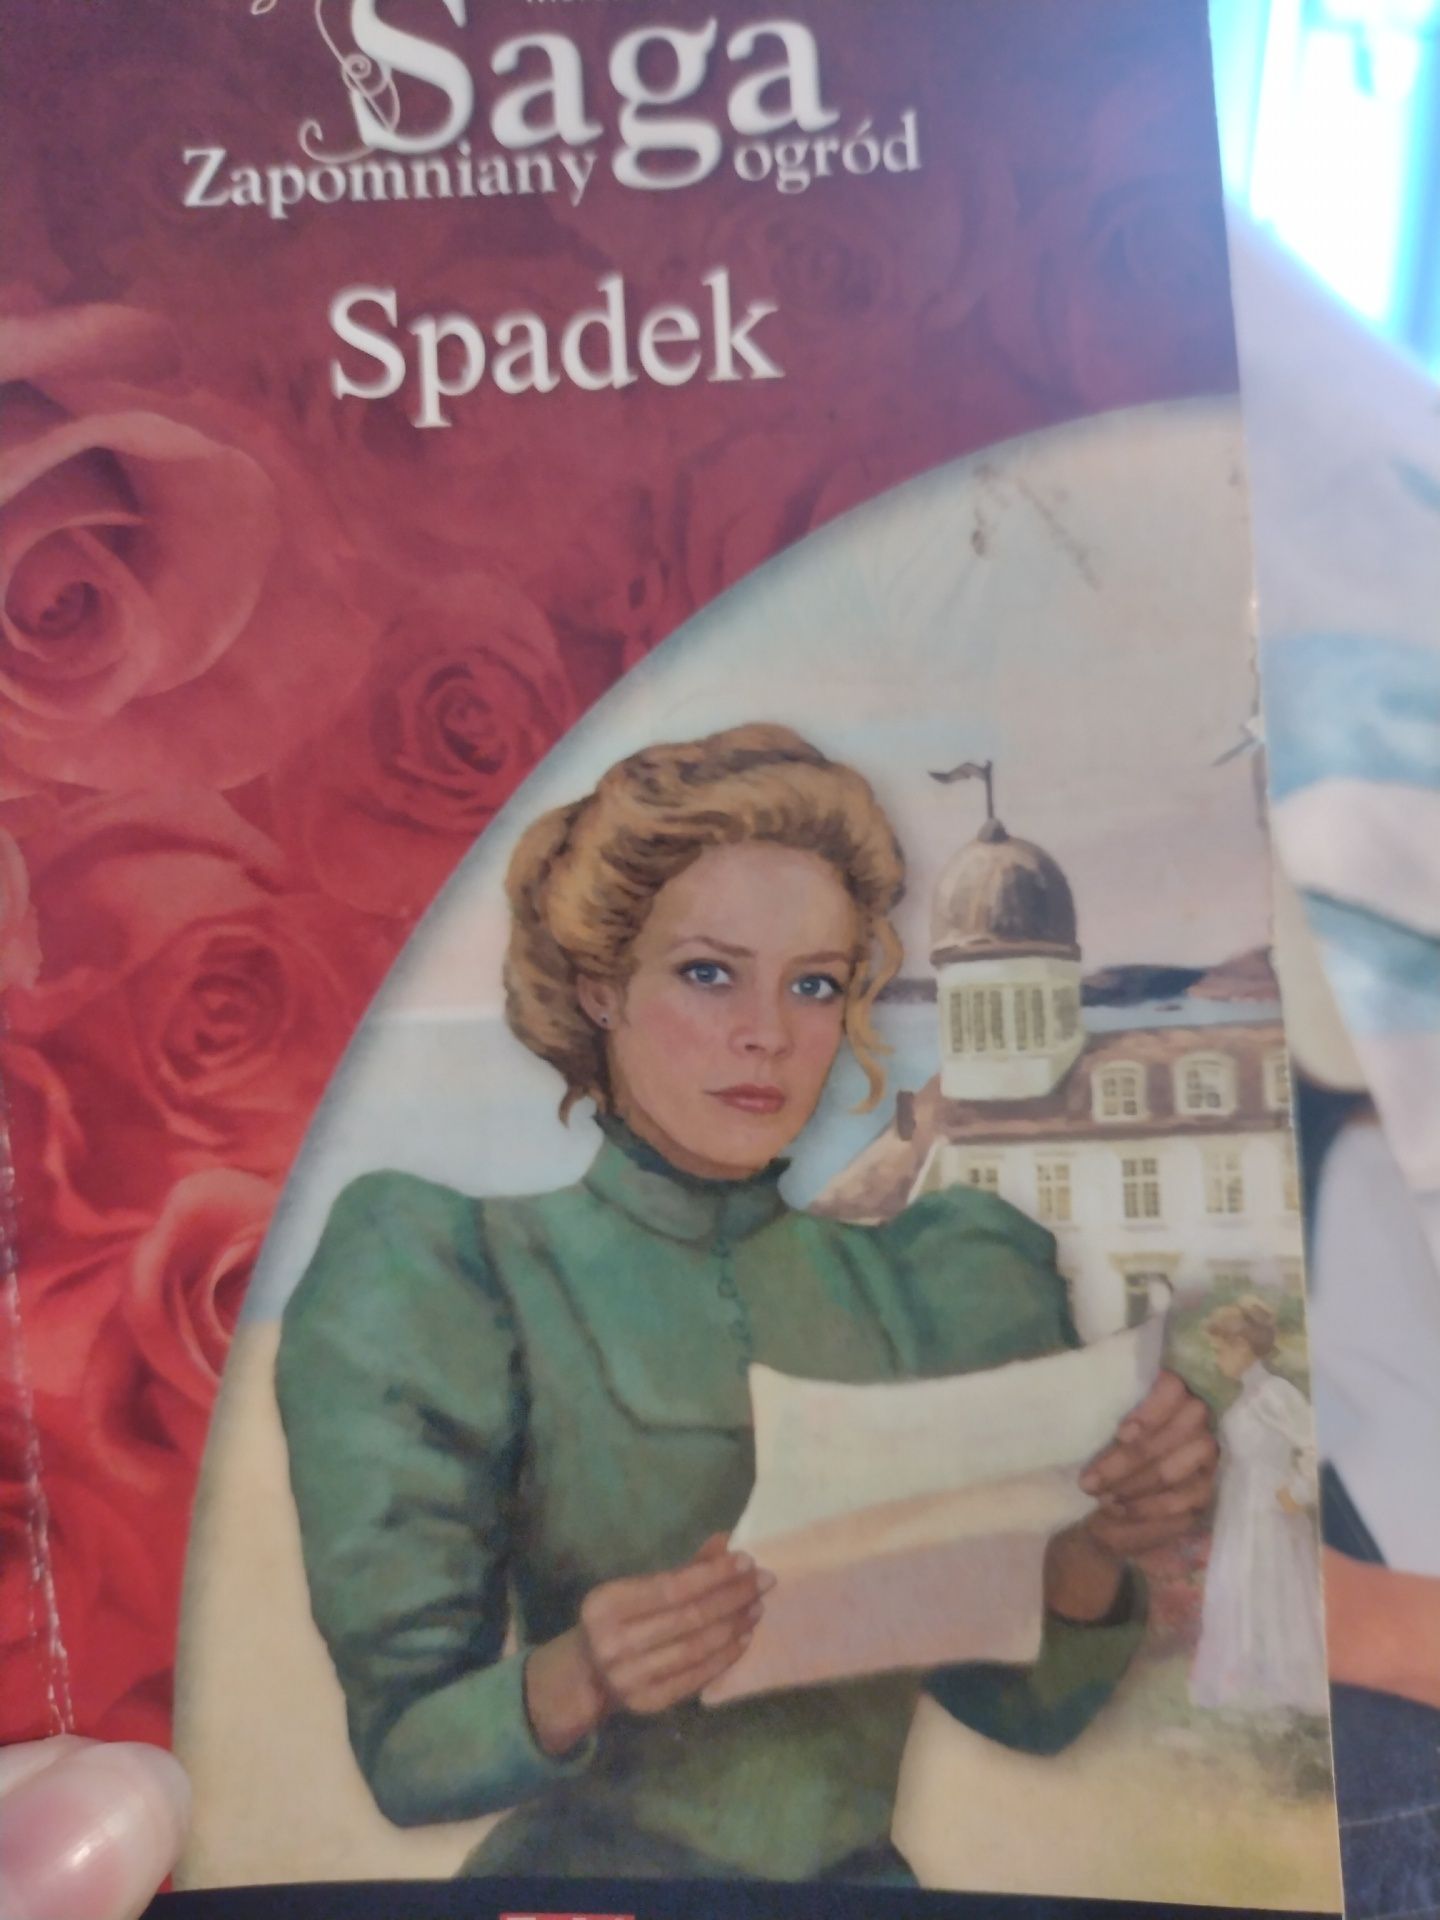 Oddam za darmo książkę  zapomniany ogród "Spadek" cz. 1 Marete Lien